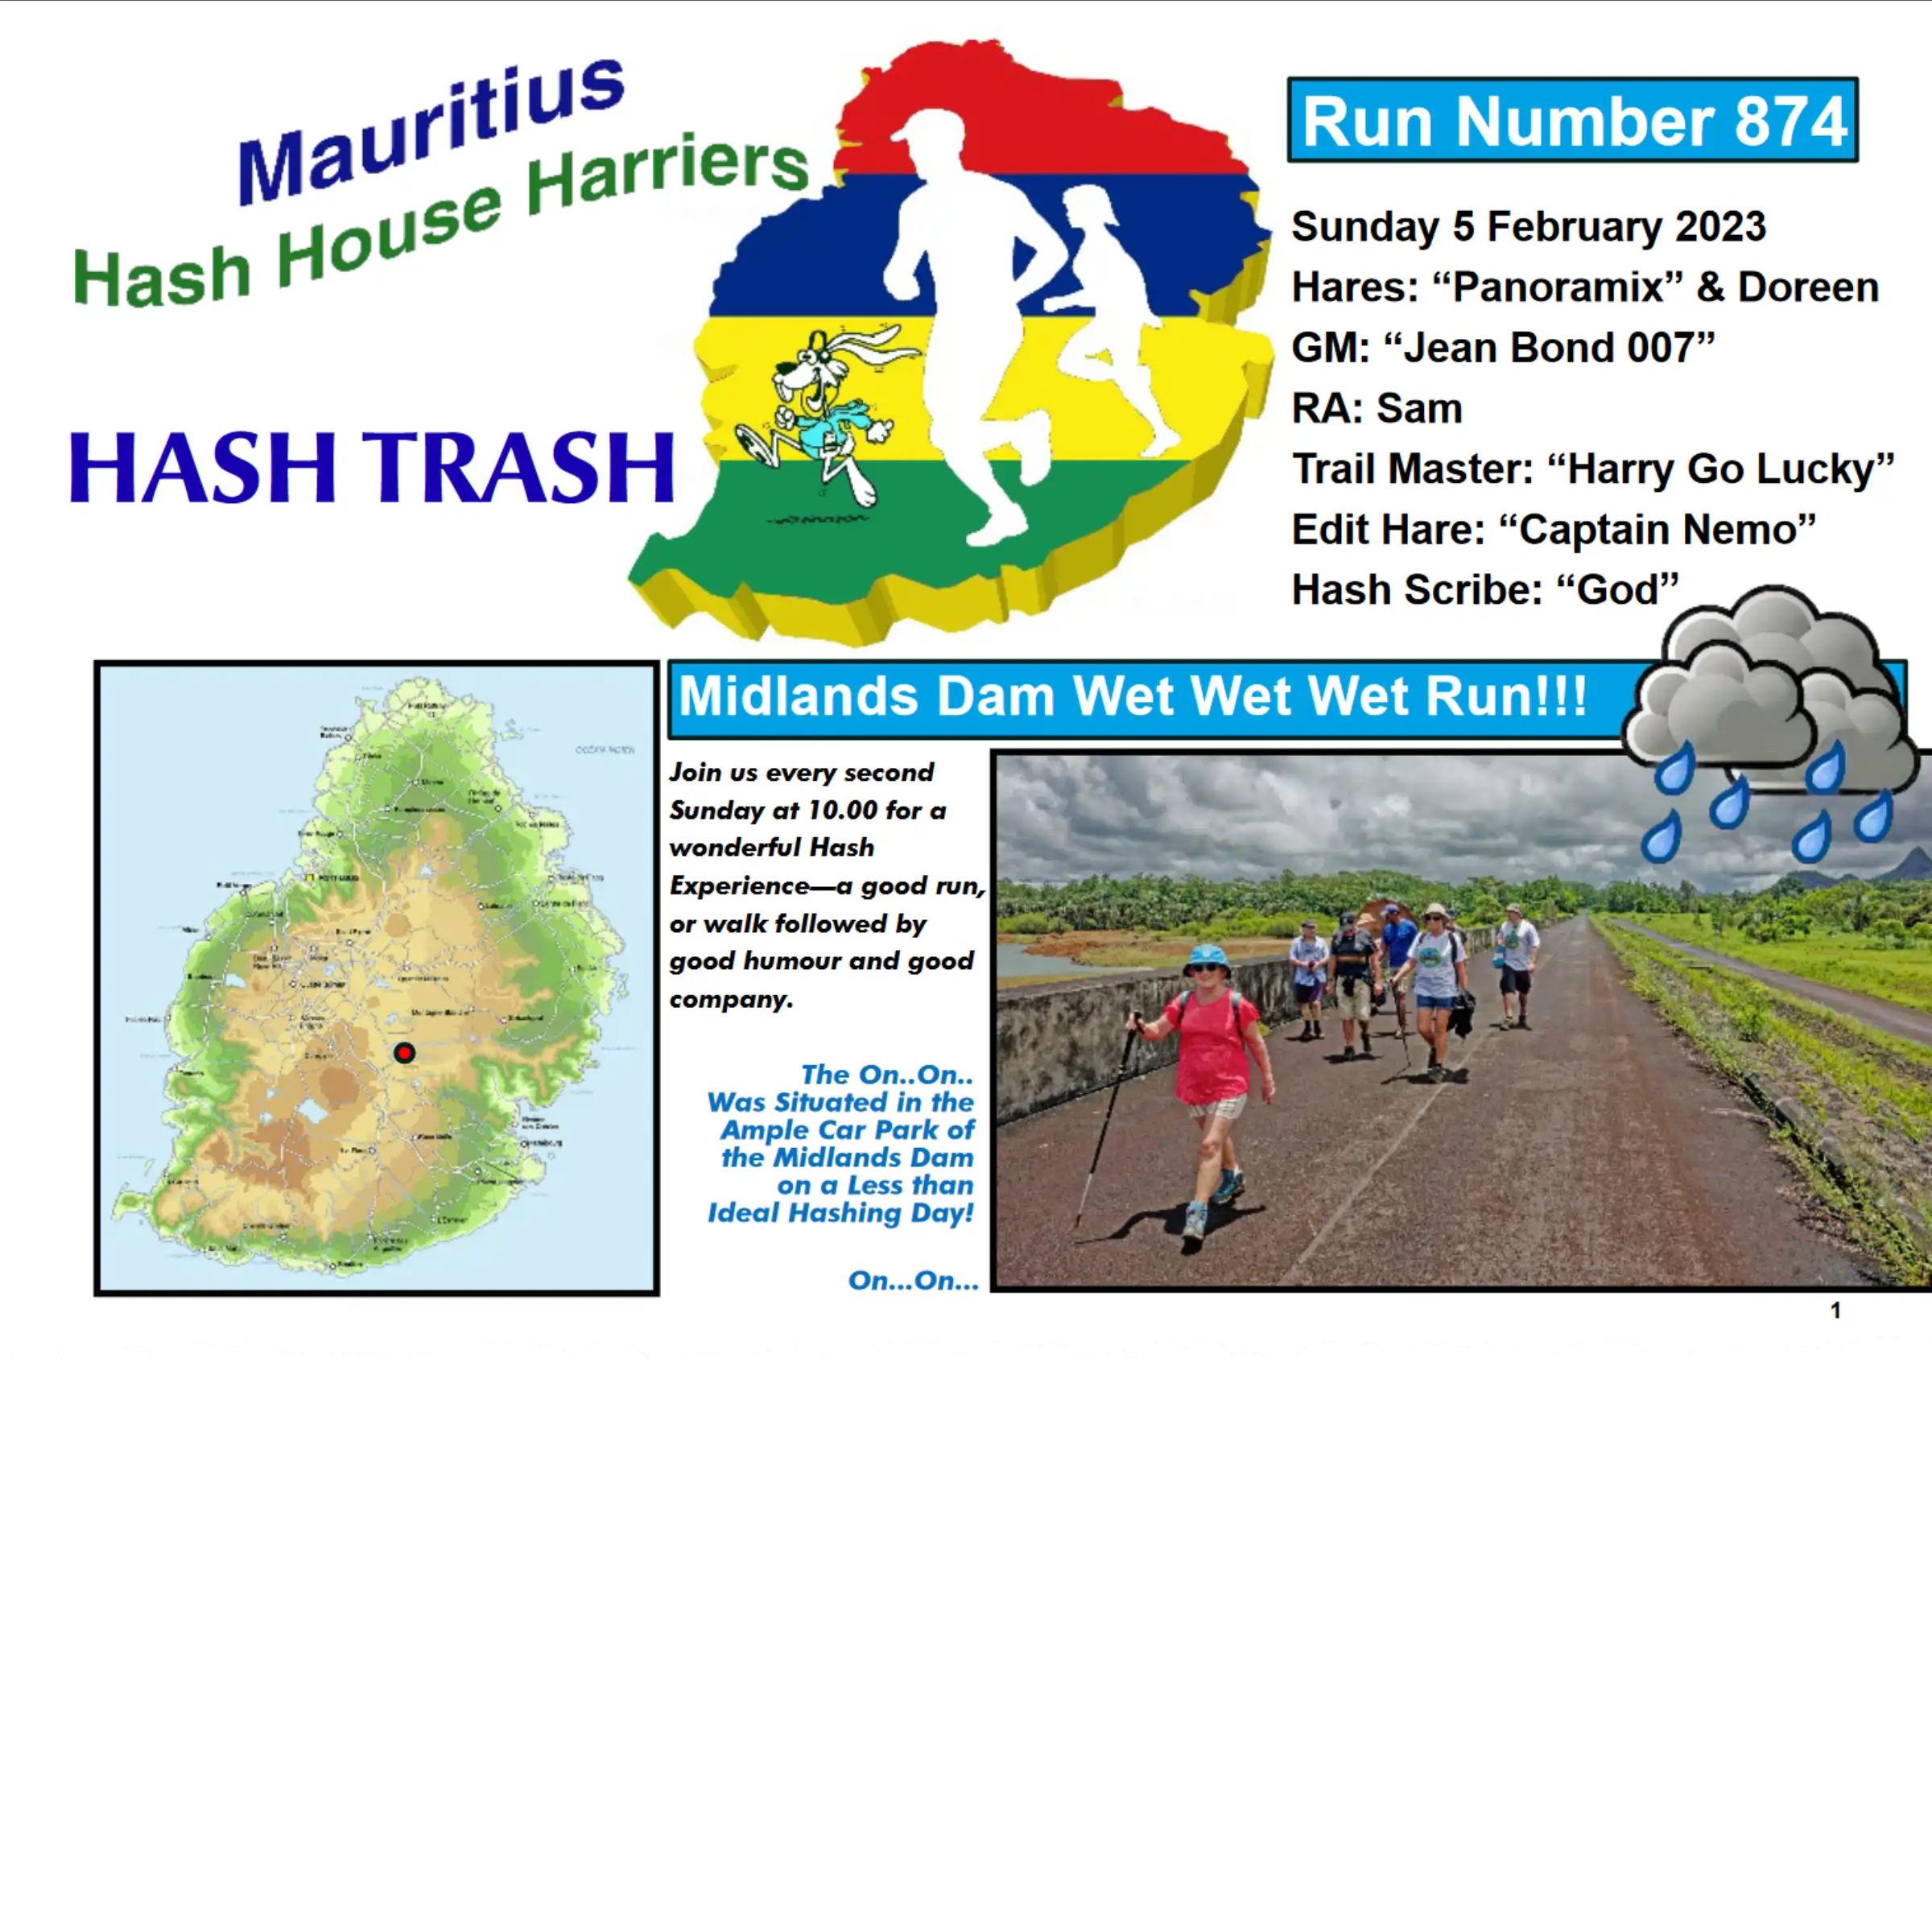 Hash Trash 874 Future Image Mauritius